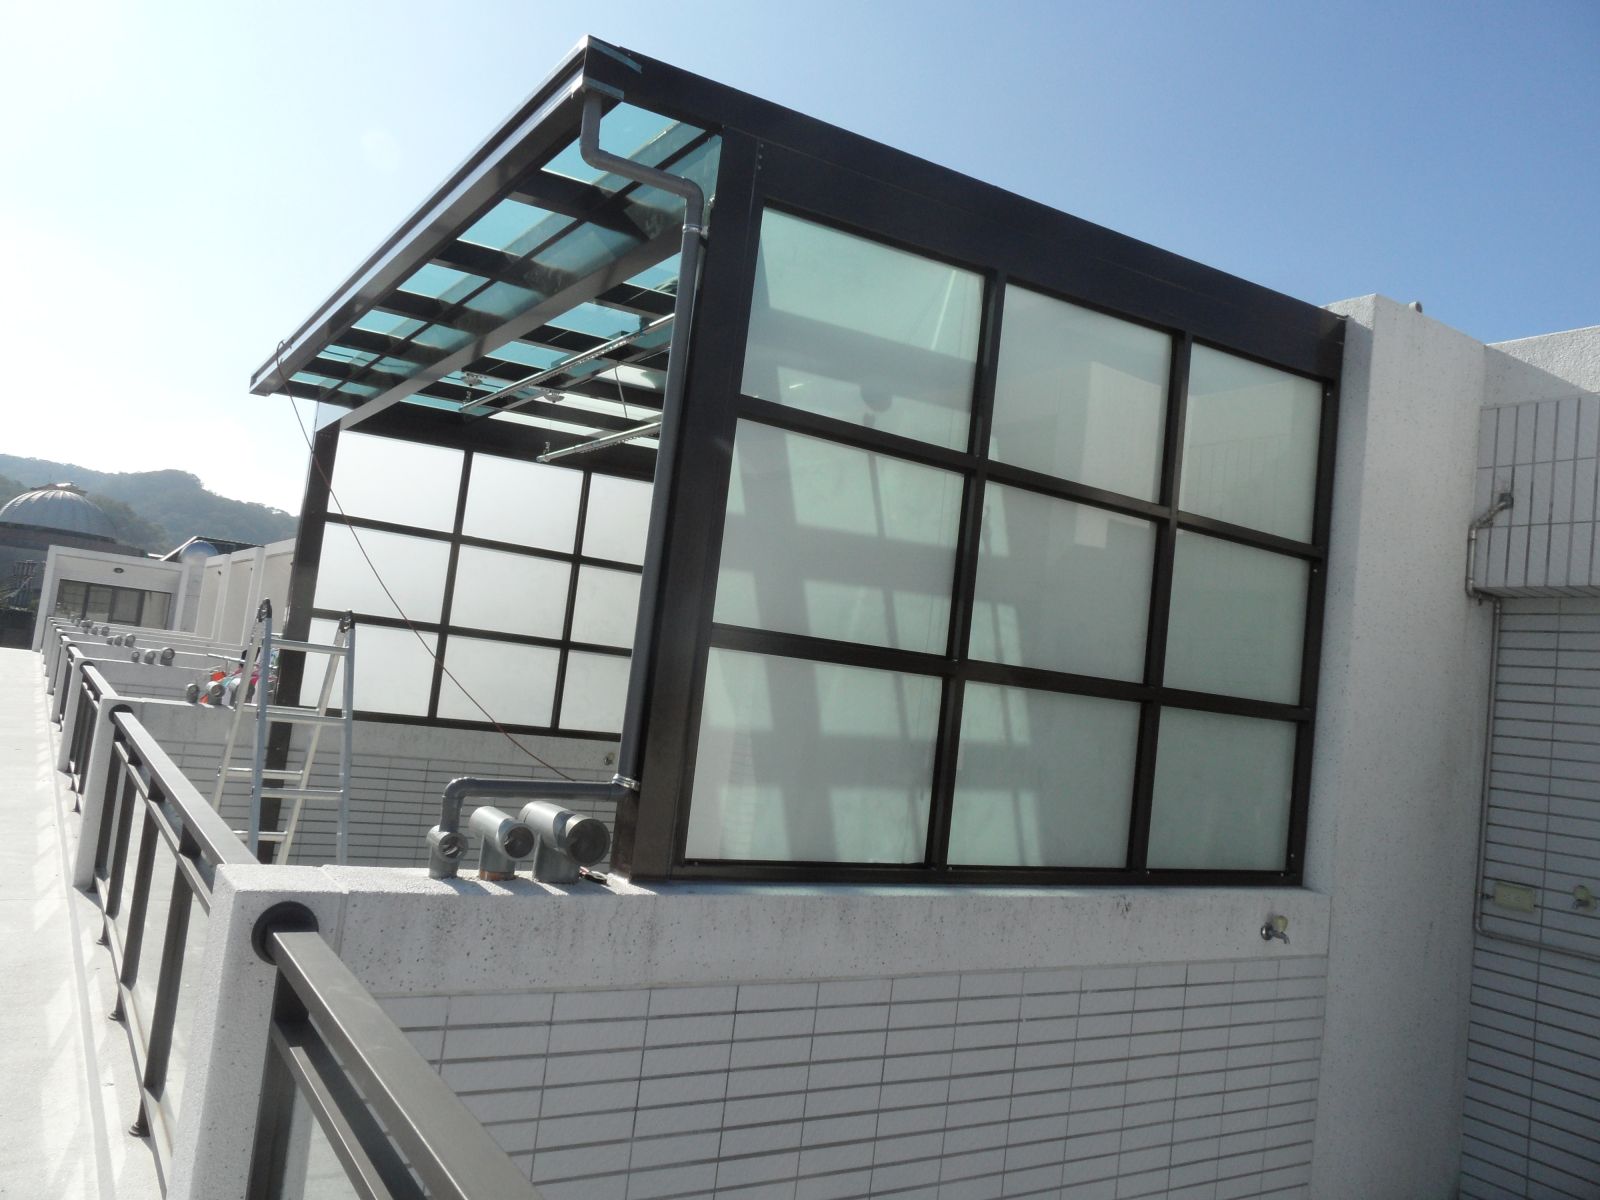 屋頂玻璃採用5+5膠合玻璃,遮陽性(電器區)搭配透光性(晾衣區)